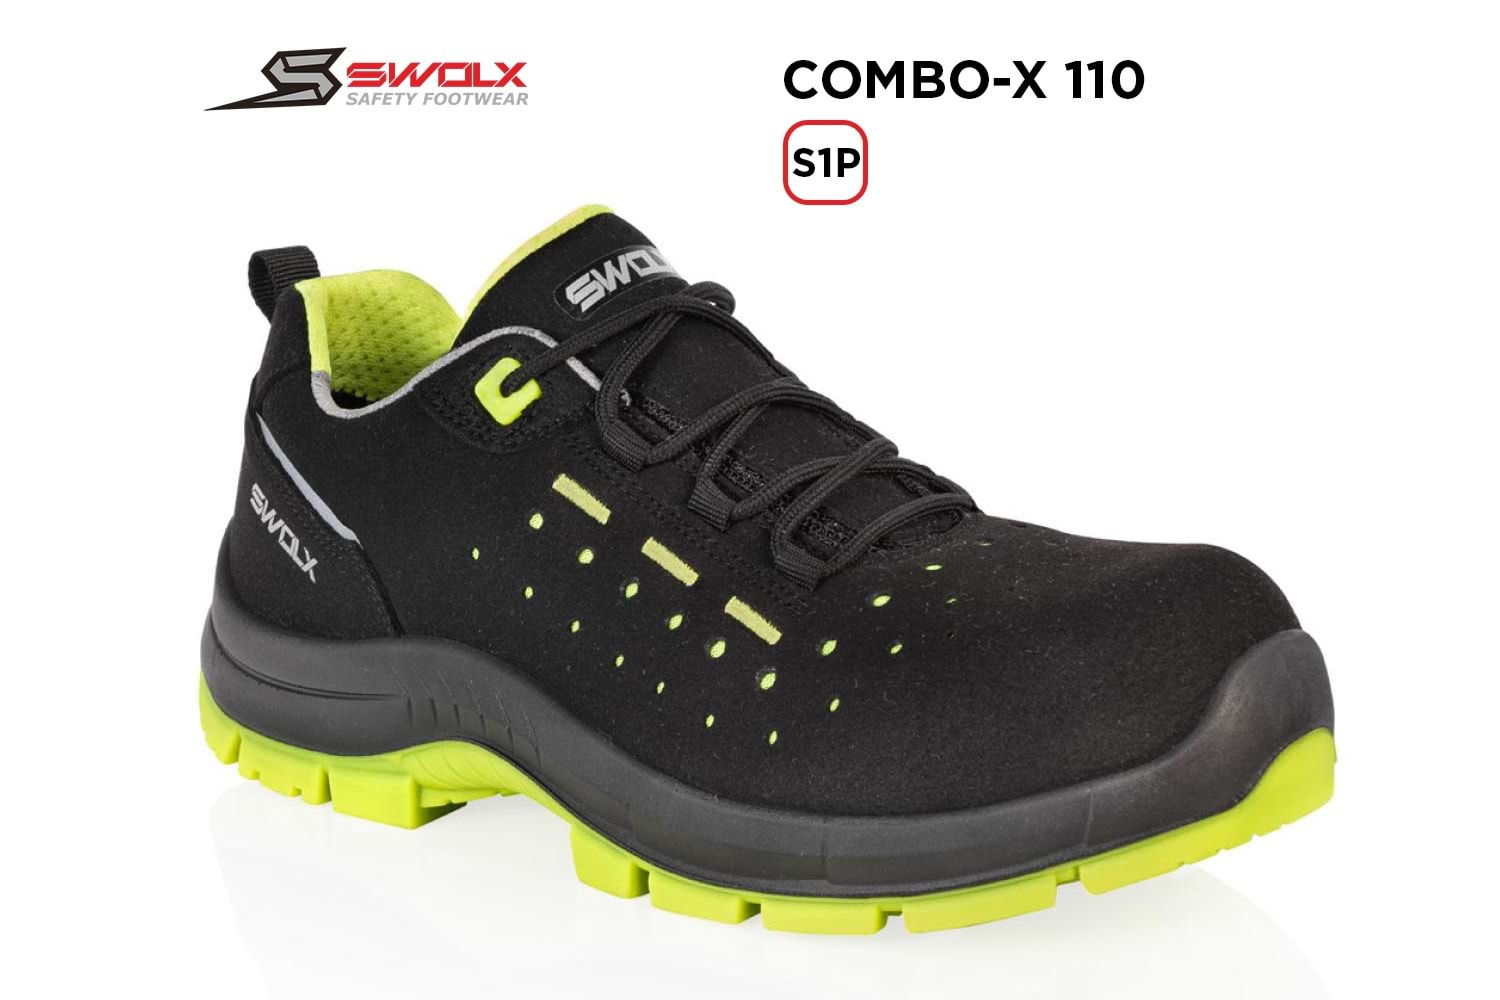 Swolx İş Ayakkabısı - Combo-X 110 S1P - 45